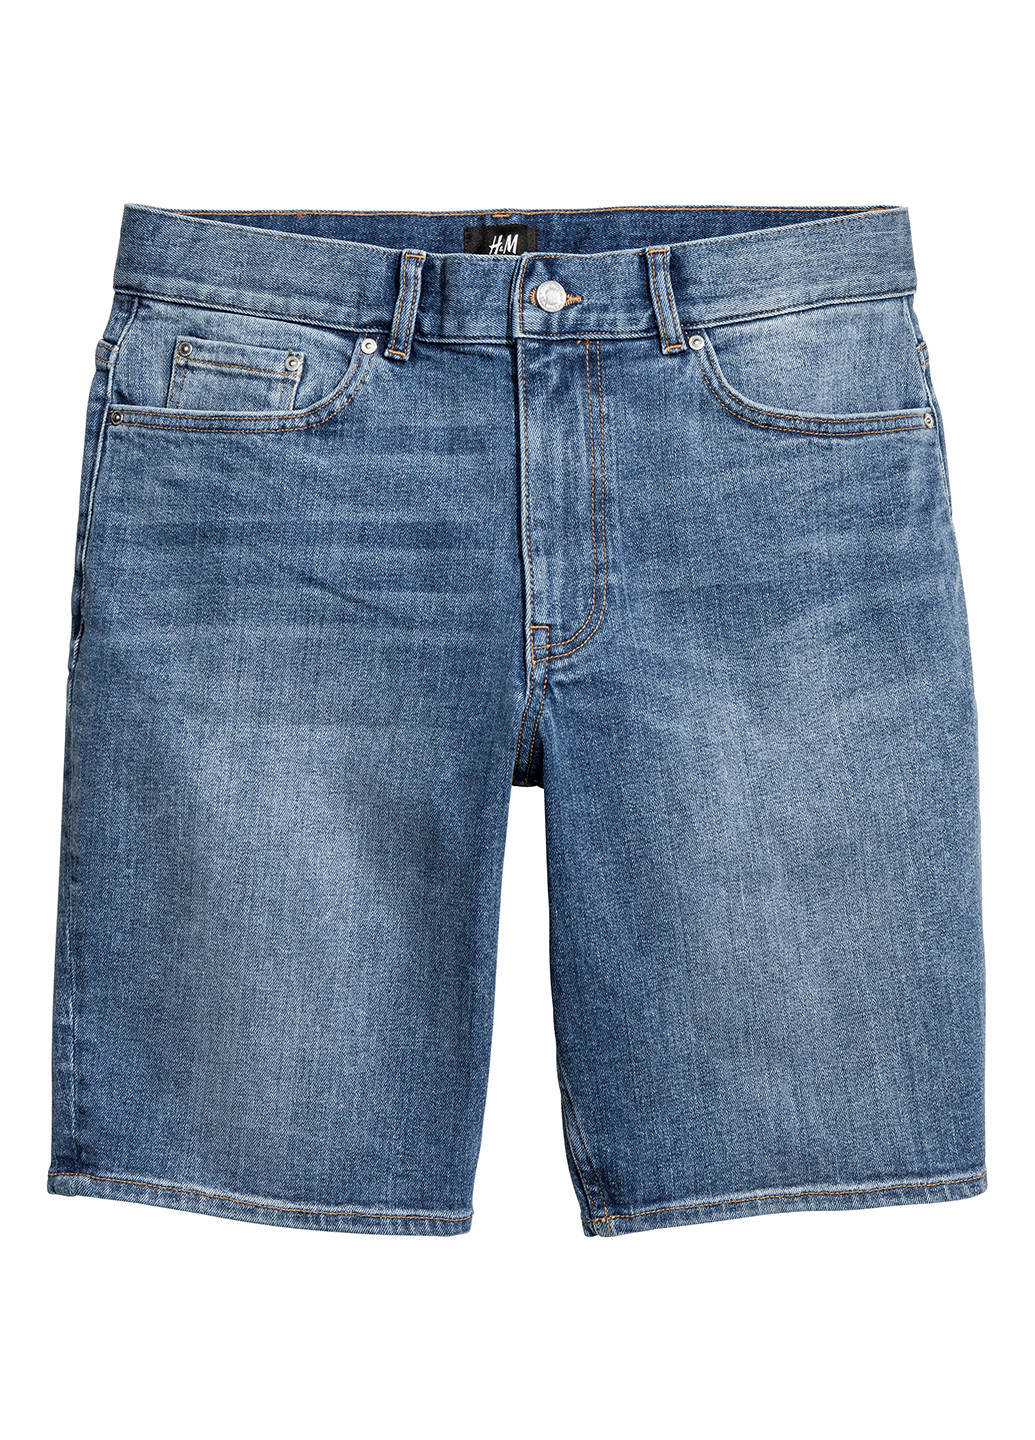 Шорты H&M бермуды однотонные синие джинсовые хлопок